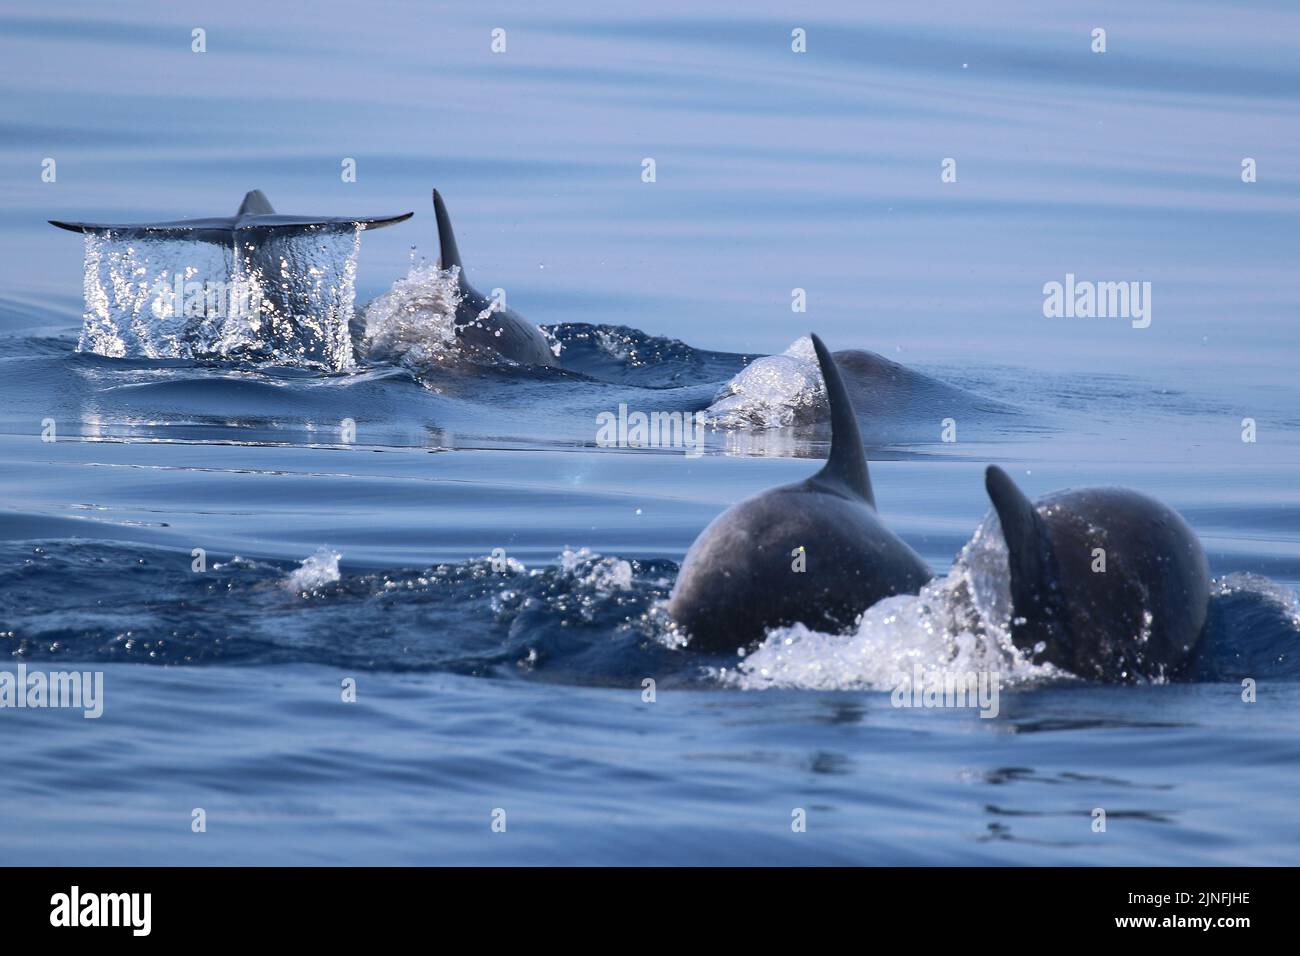 Dolphin watching near Taranto, Italy Stock Photo